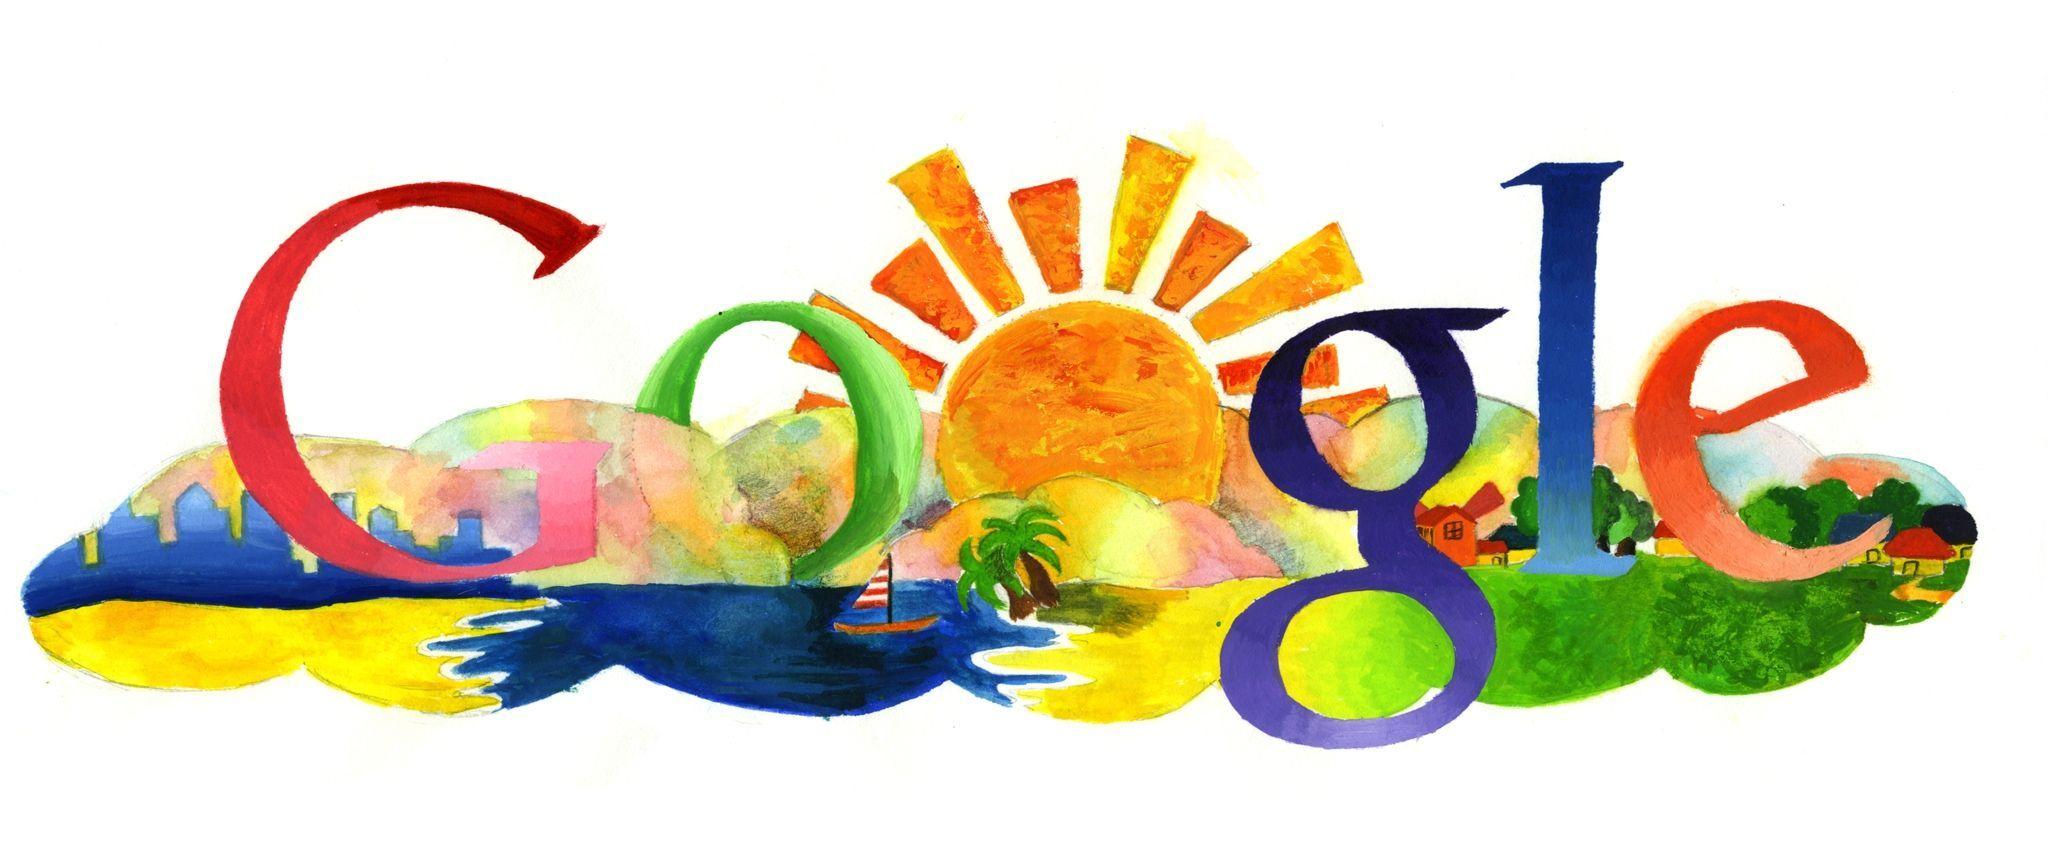 Google Art Logo - Google's Doodle 4 Google Logo Contest: Get Doodling, Kids. Networks